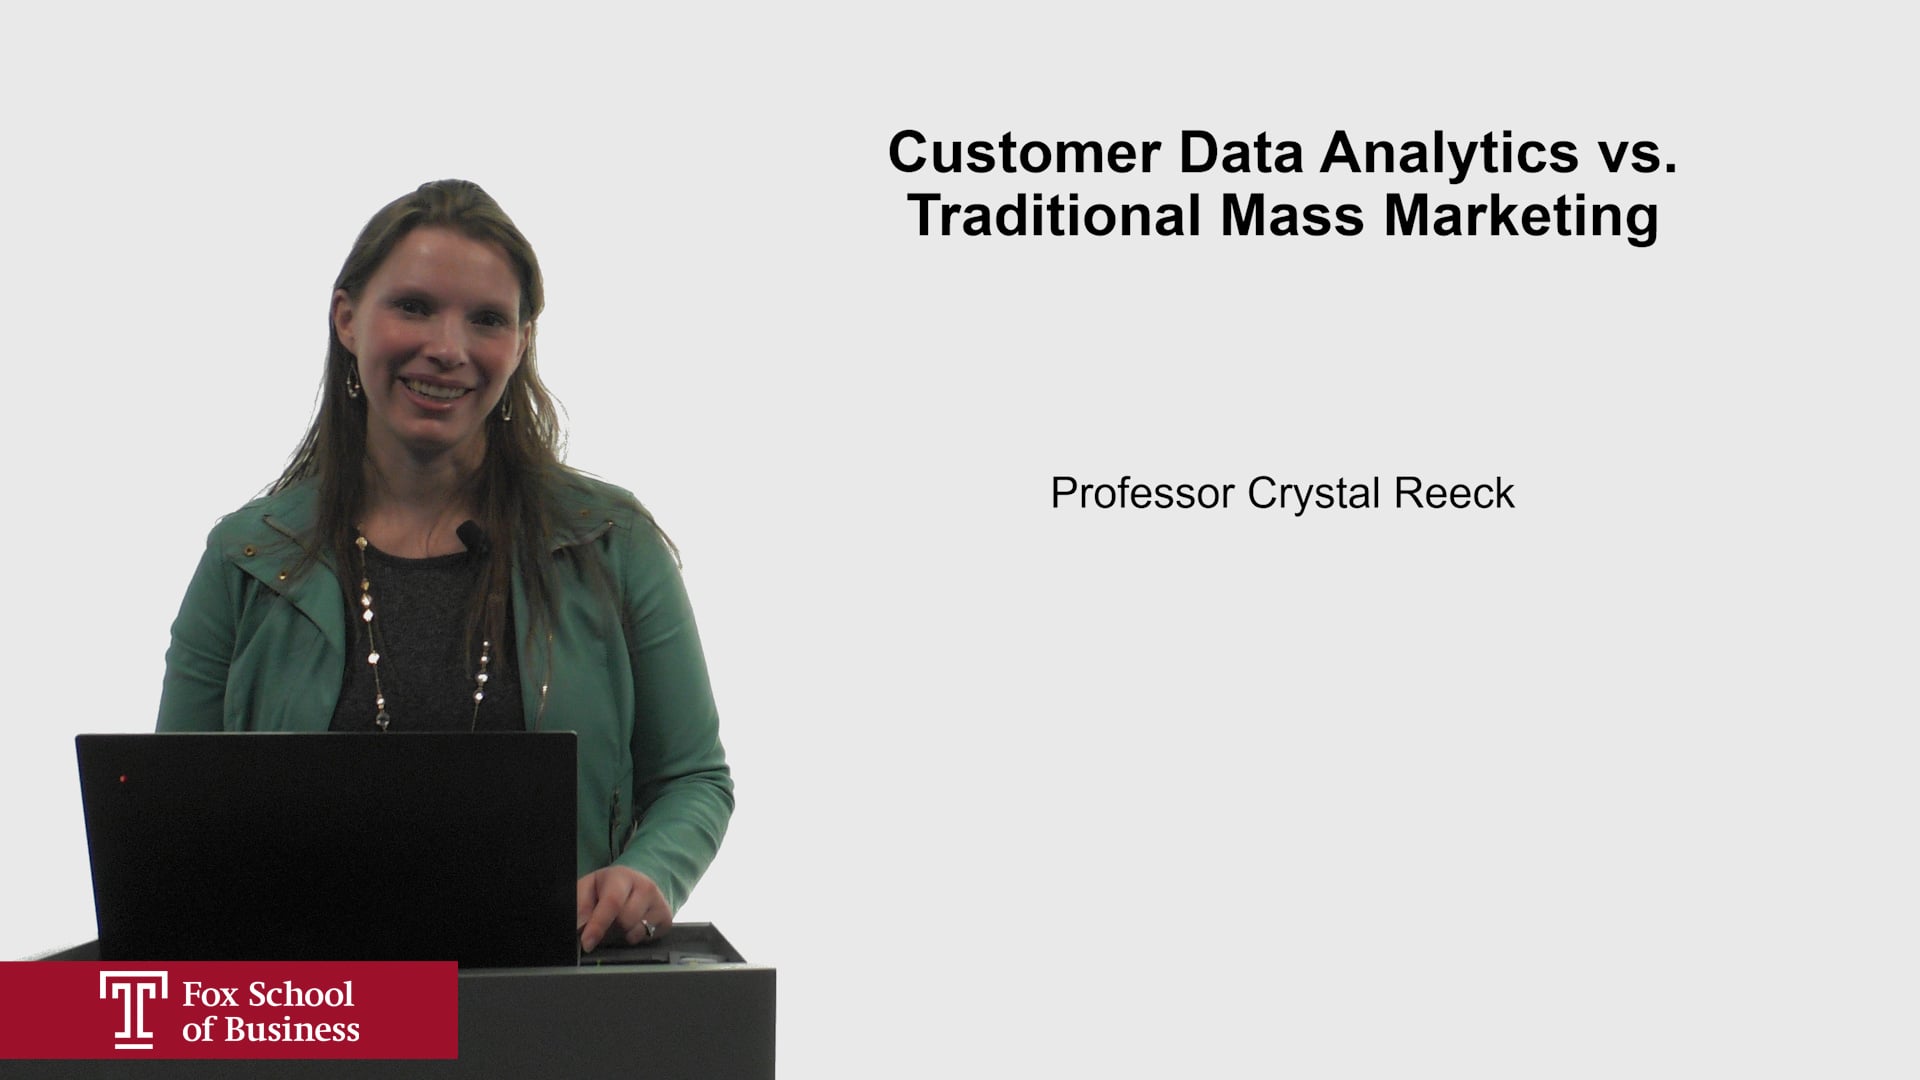 Customer Data Analytics versus Traditional Mass Marketing